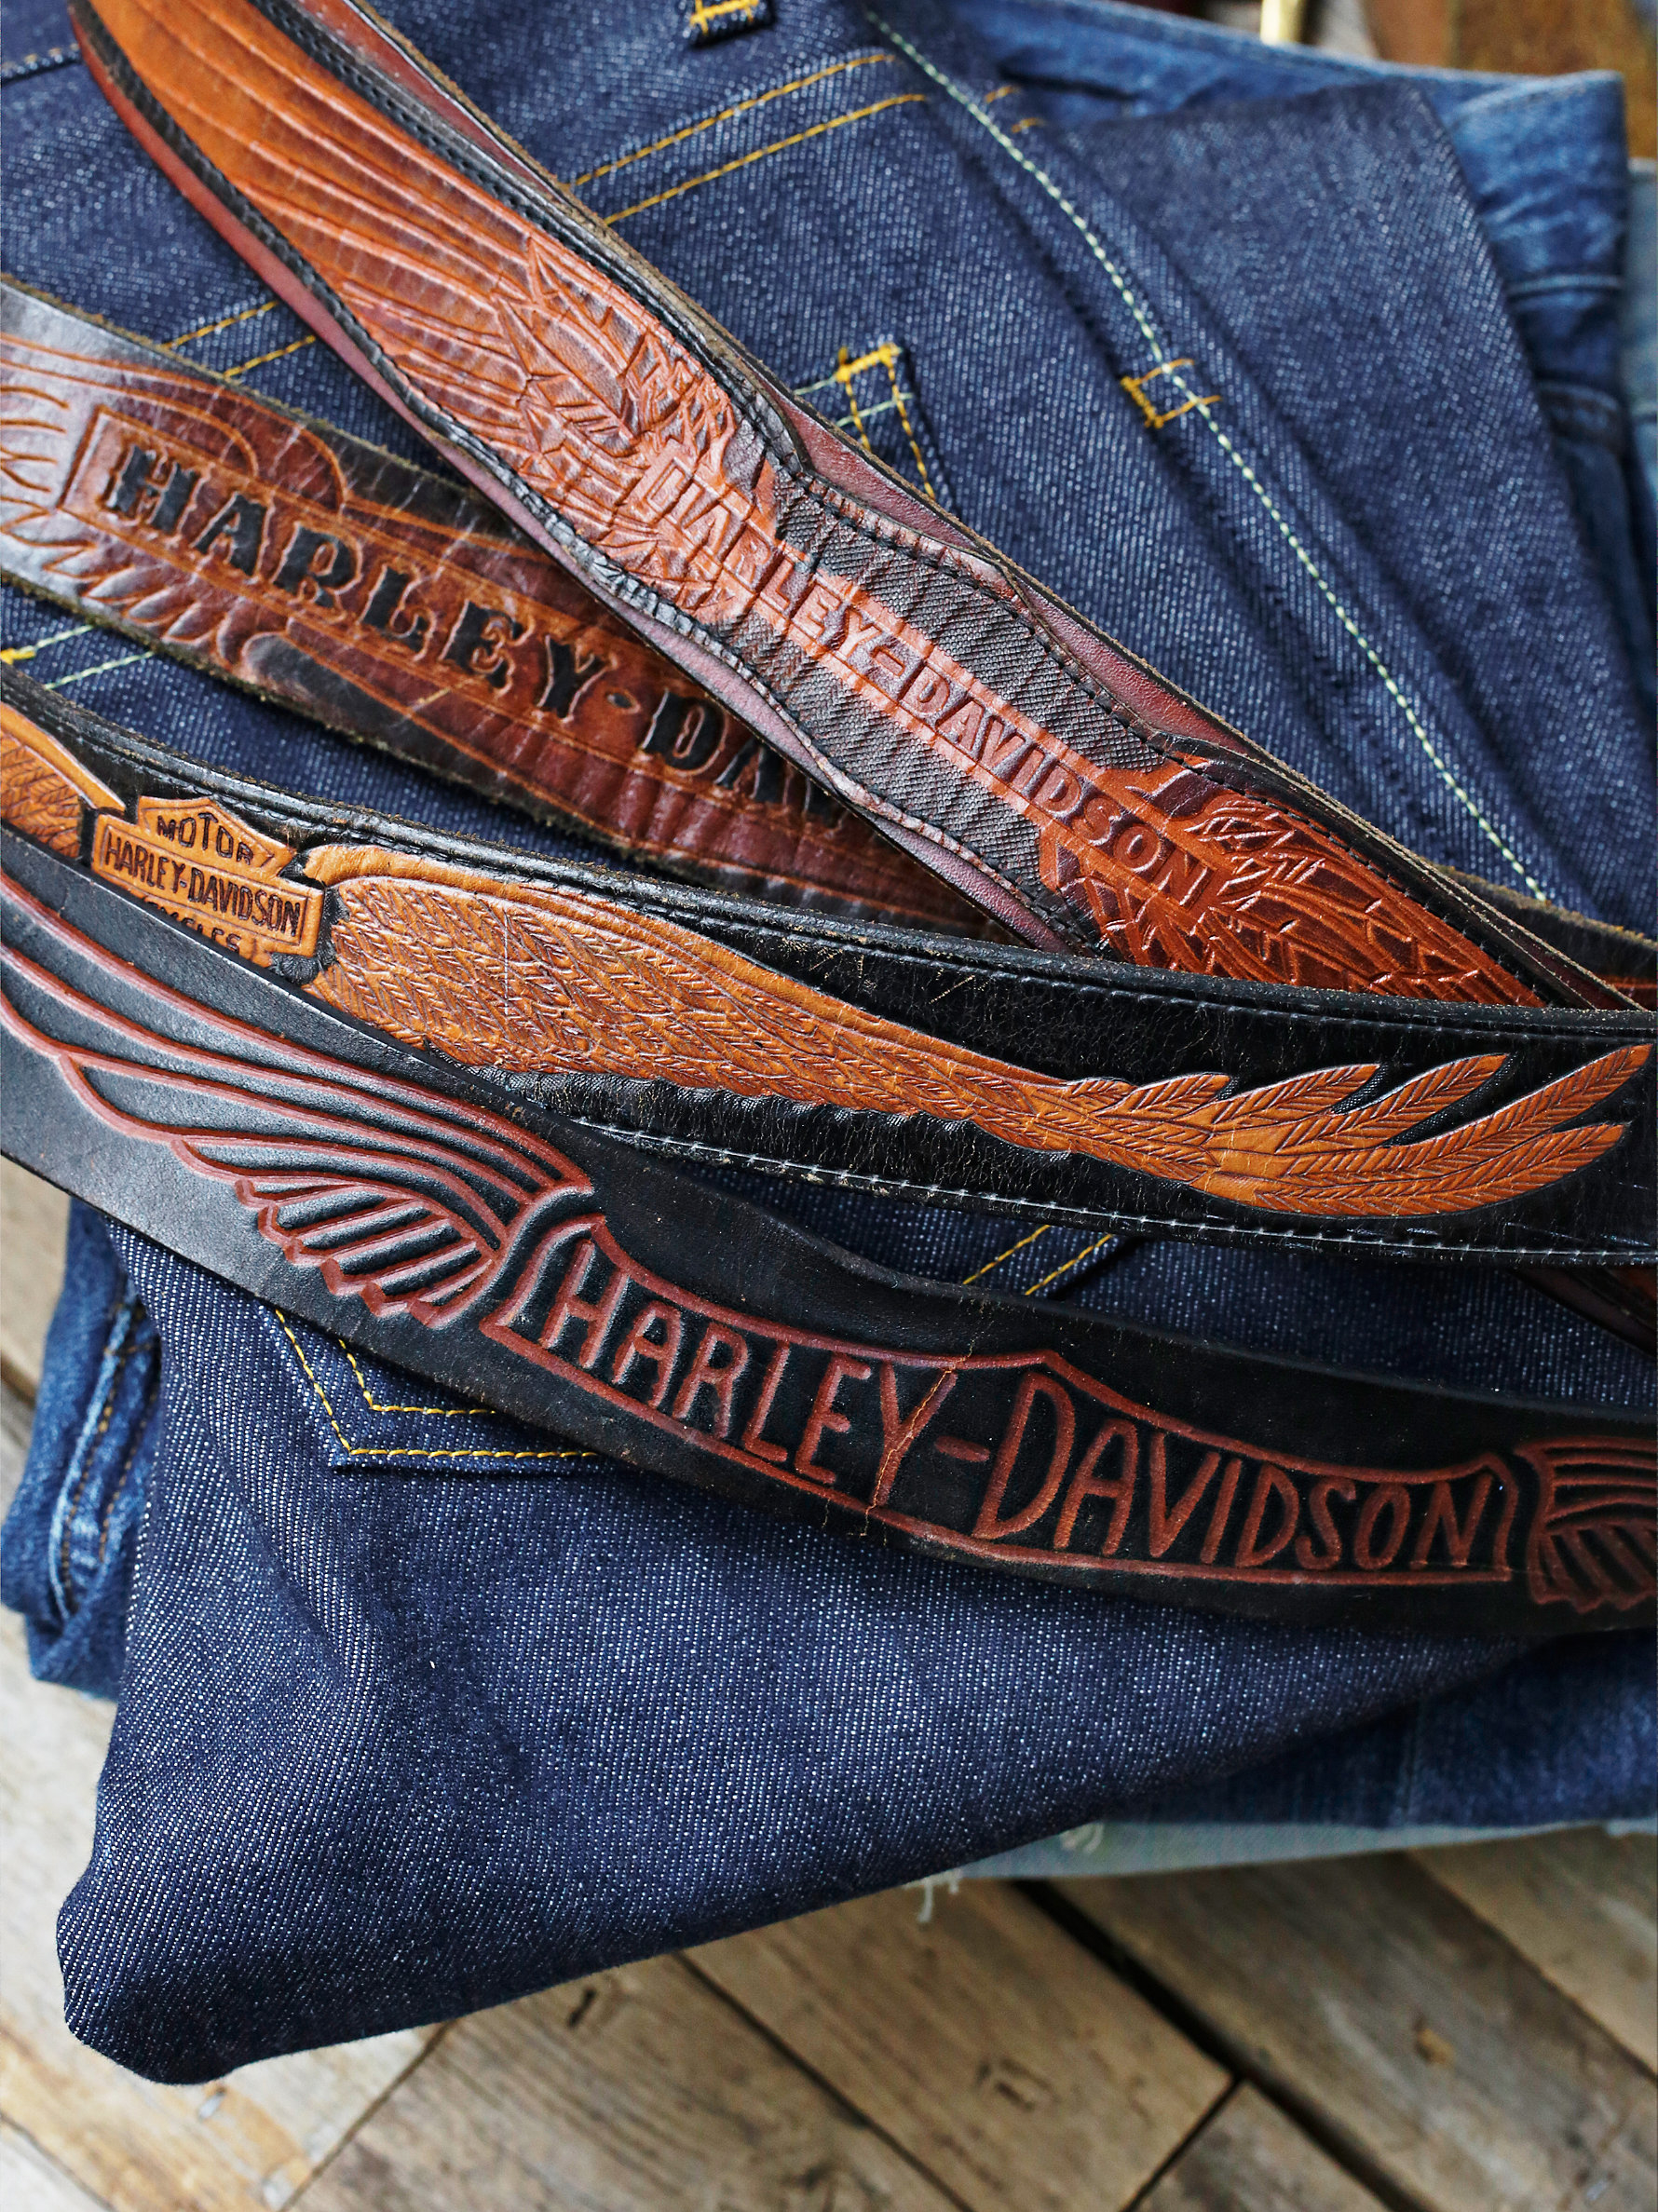 Free People Vintage Harley Davidson Belt for Men